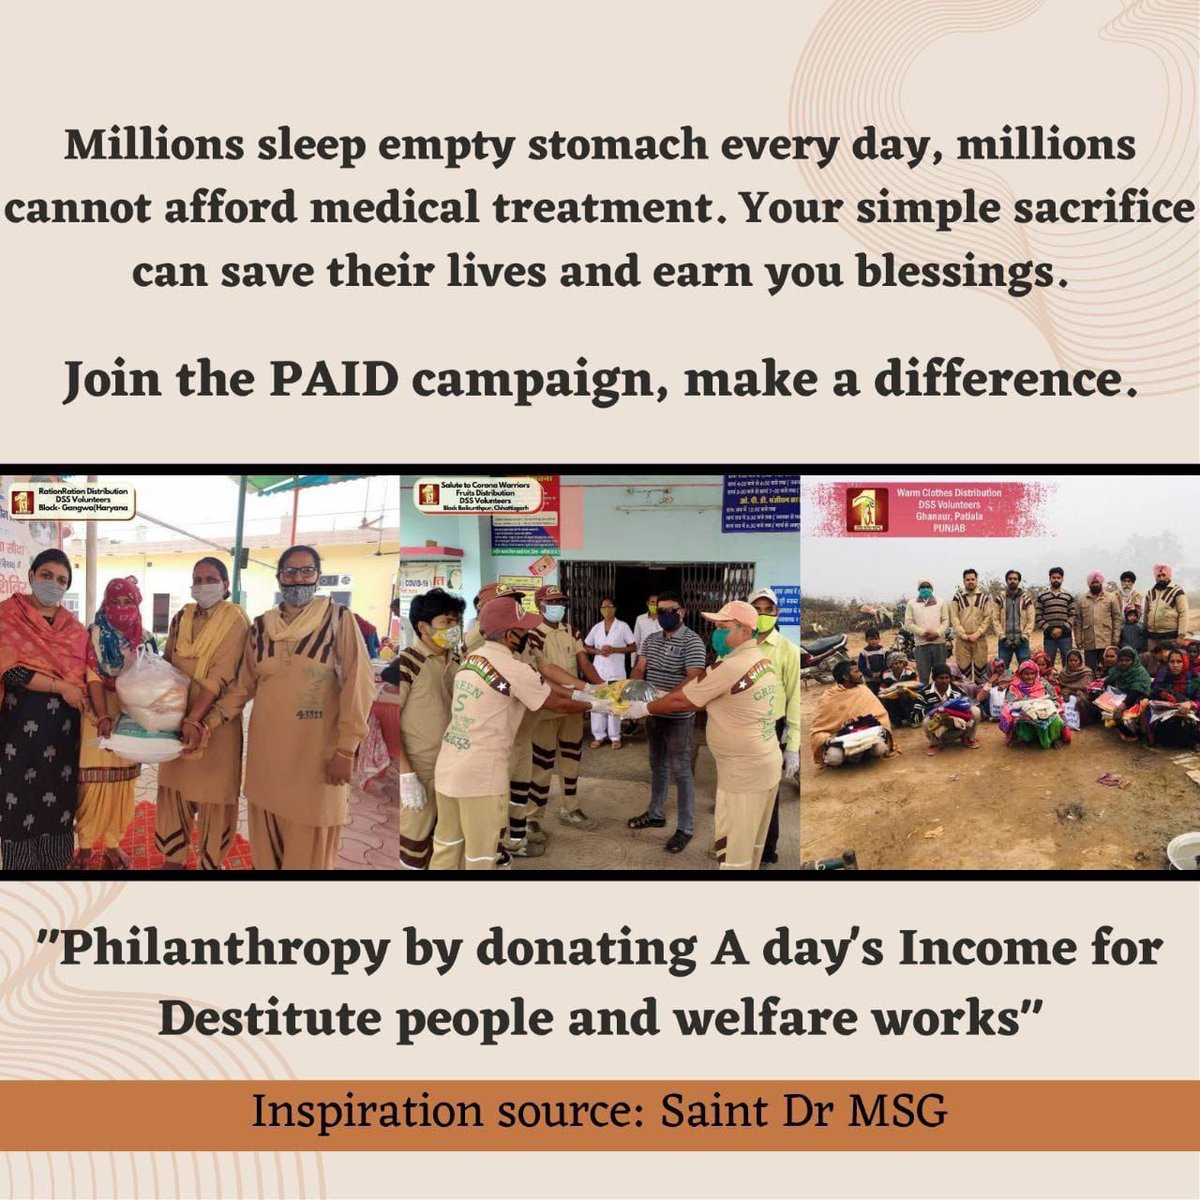 आज की दुनिया में जहां सब कुछ पैसे के इर्द-गिर्द घूमता है भारत में लगभग 270 मिलियन लोग गरीबी रेखा से नीचे रहते हैं एक न्यायपूर्ण दुनिया बनाने के लिए Saint MSG Insan ने #PaidCampaign , मुहिम की शुरुआत की, जिसमें स्वयंसेवक वंचितों की भलाई के लिए अपना एक दिन का वेतन दान करेंगे।